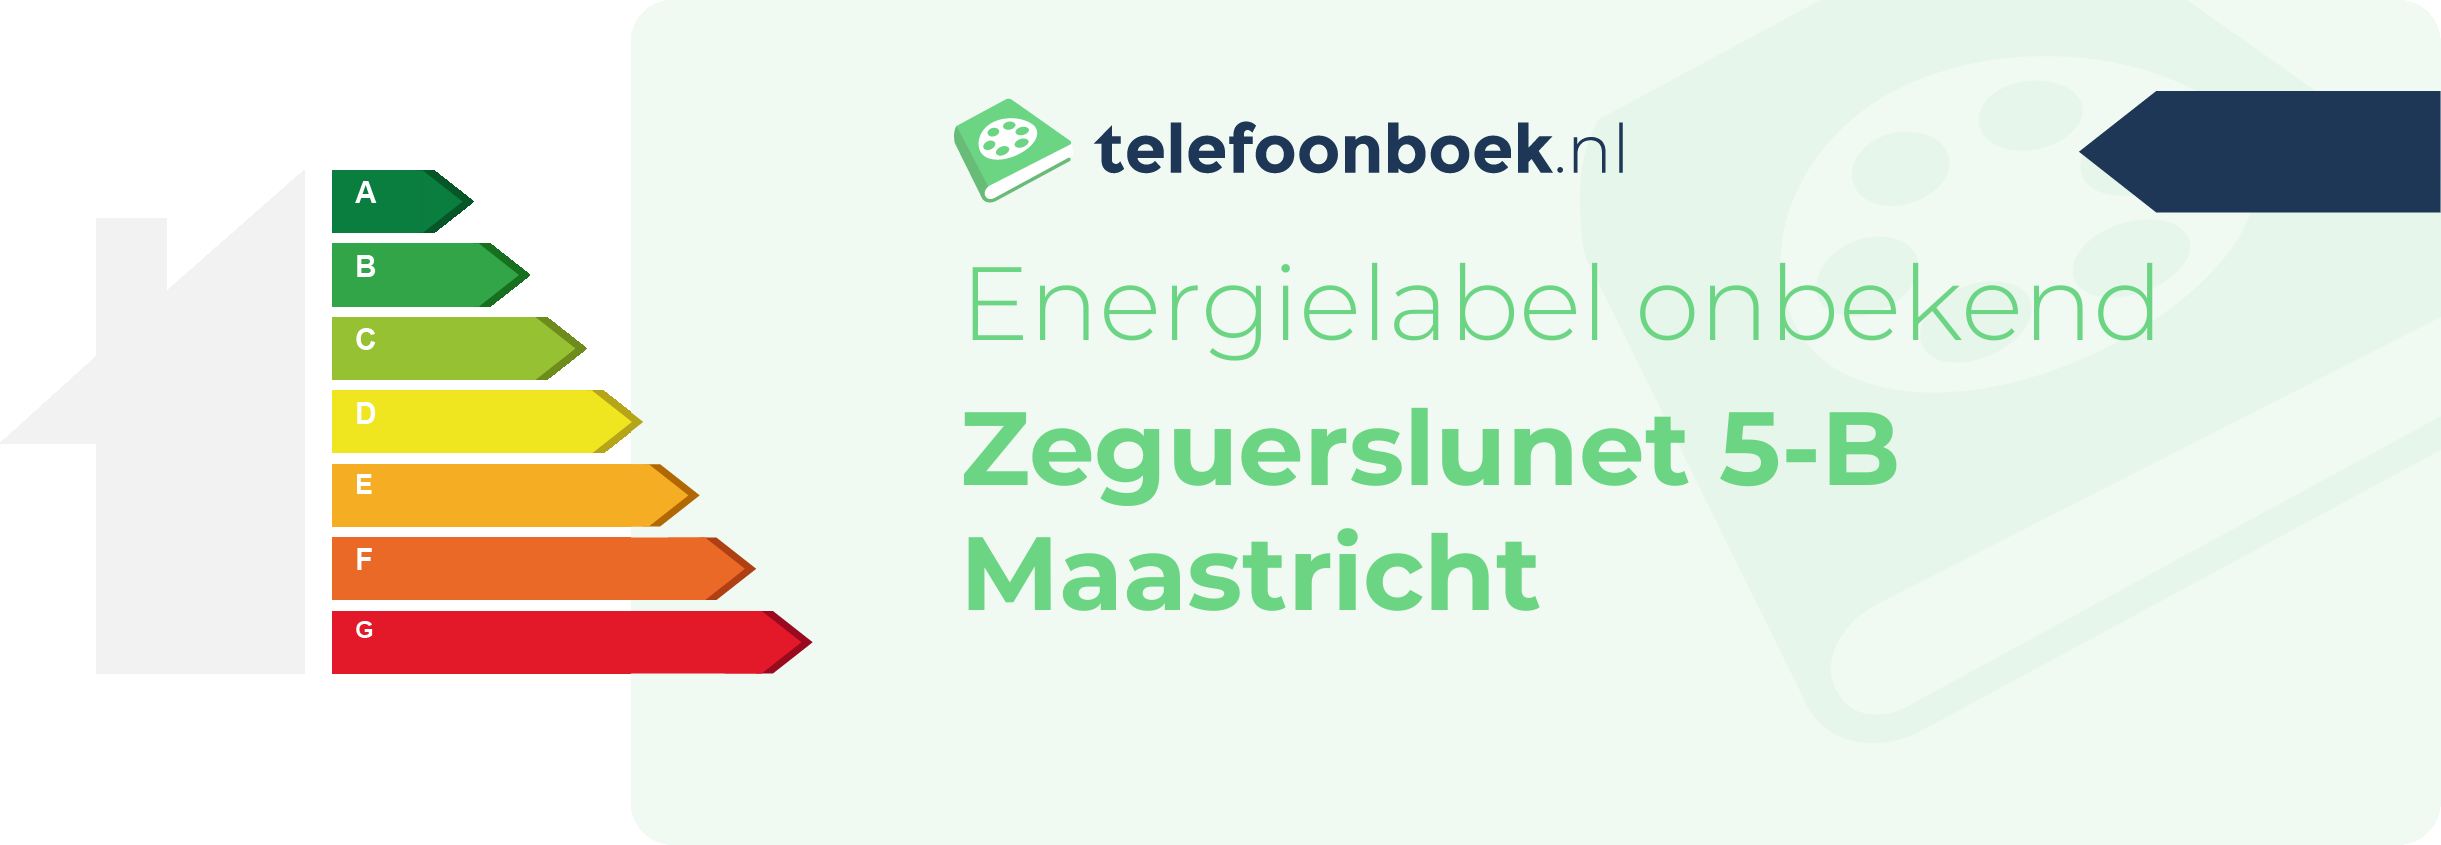 Energielabel Zeguerslunet 5-B Maastricht